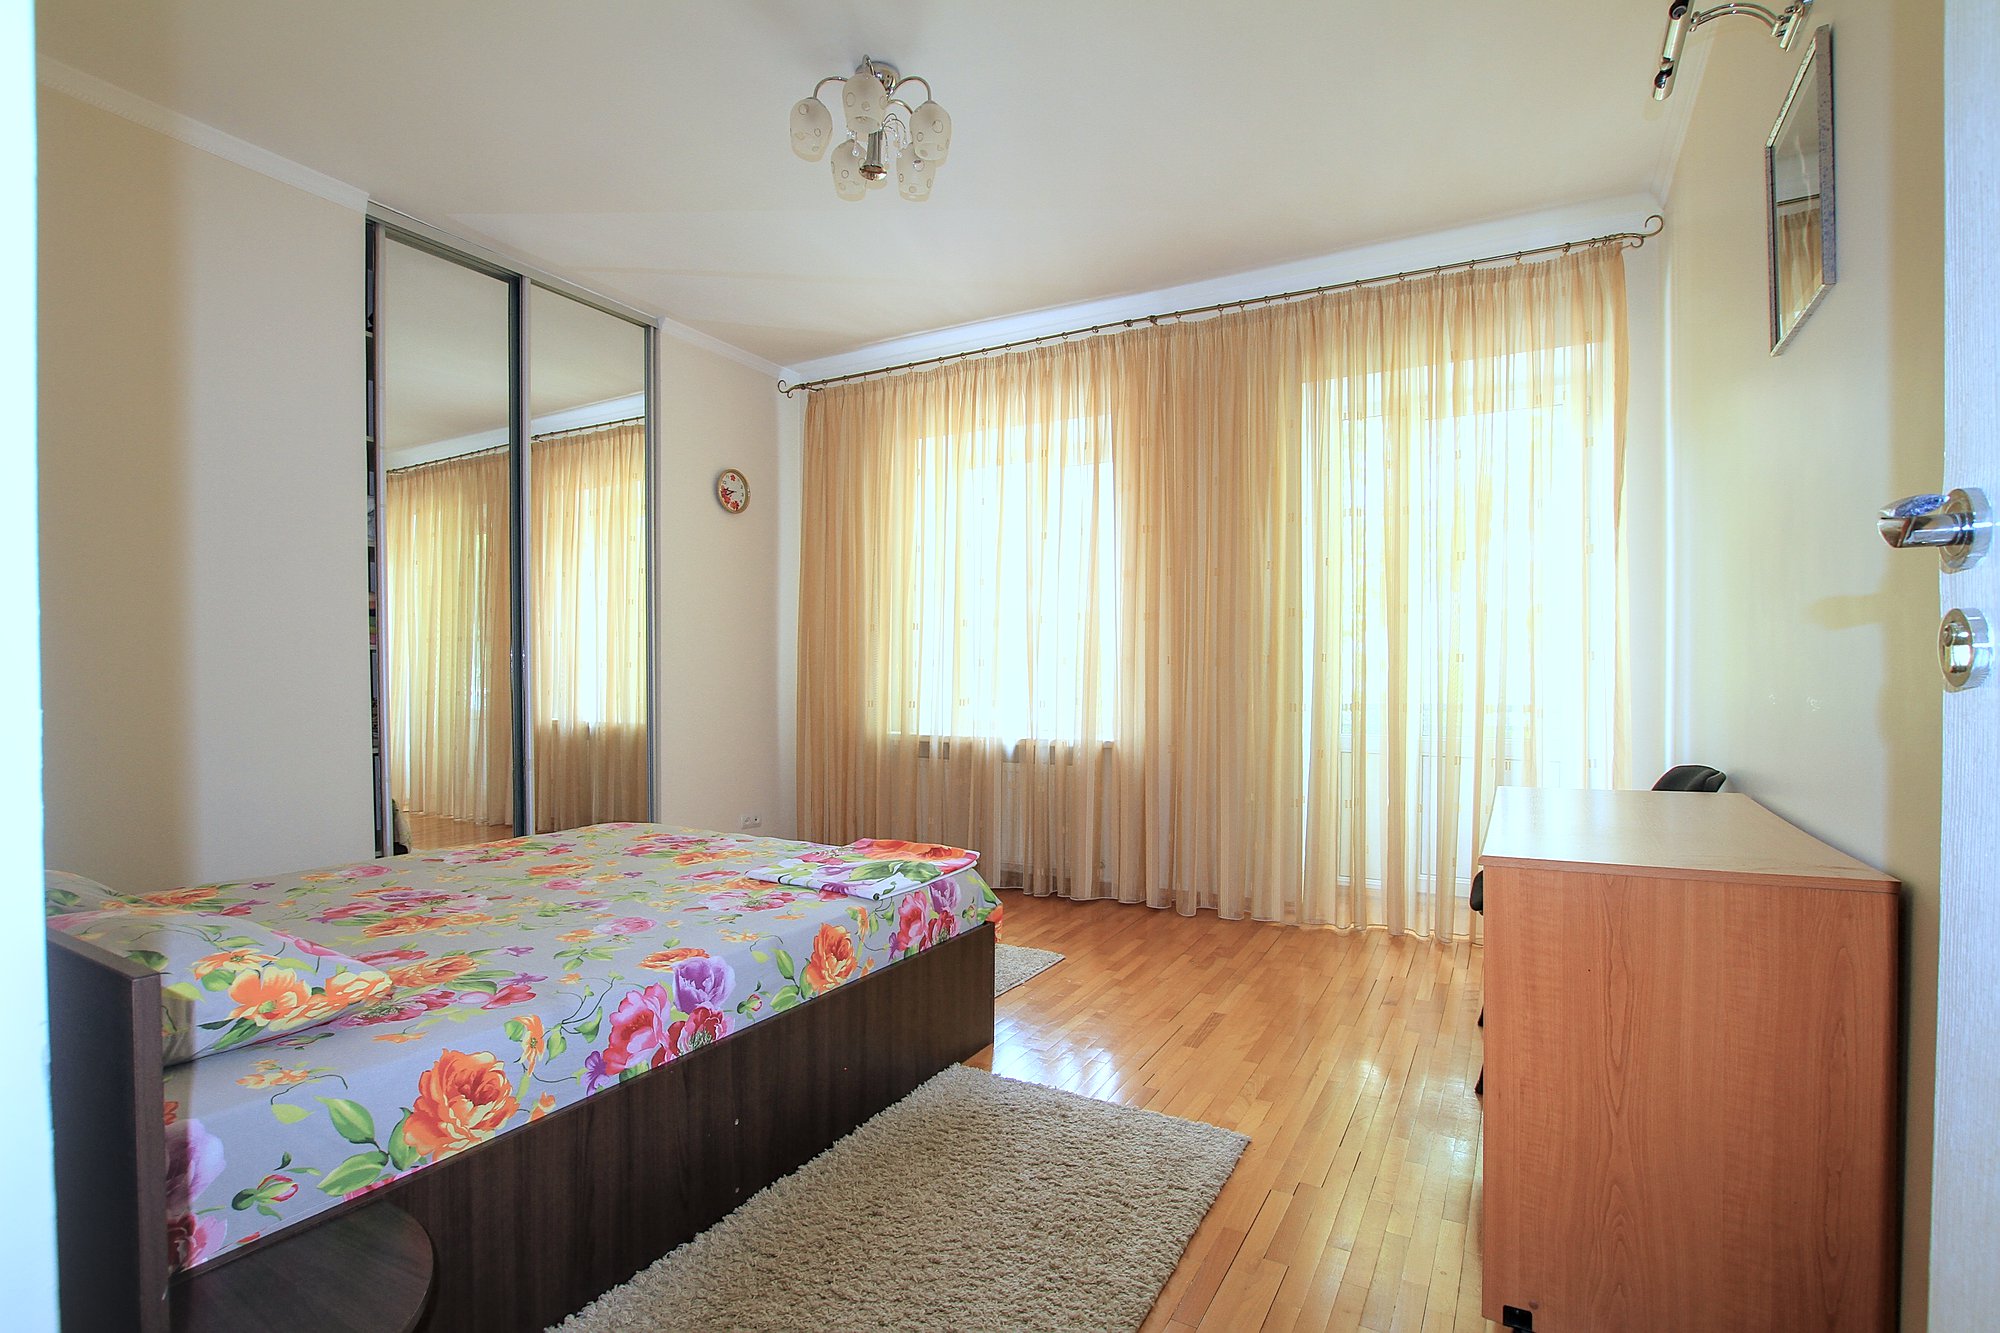 Downtown Lease это квартира в аренду в Кишиневе имеющая 3 комнаты в аренду в Кишиневе - Chisinau, Moldova